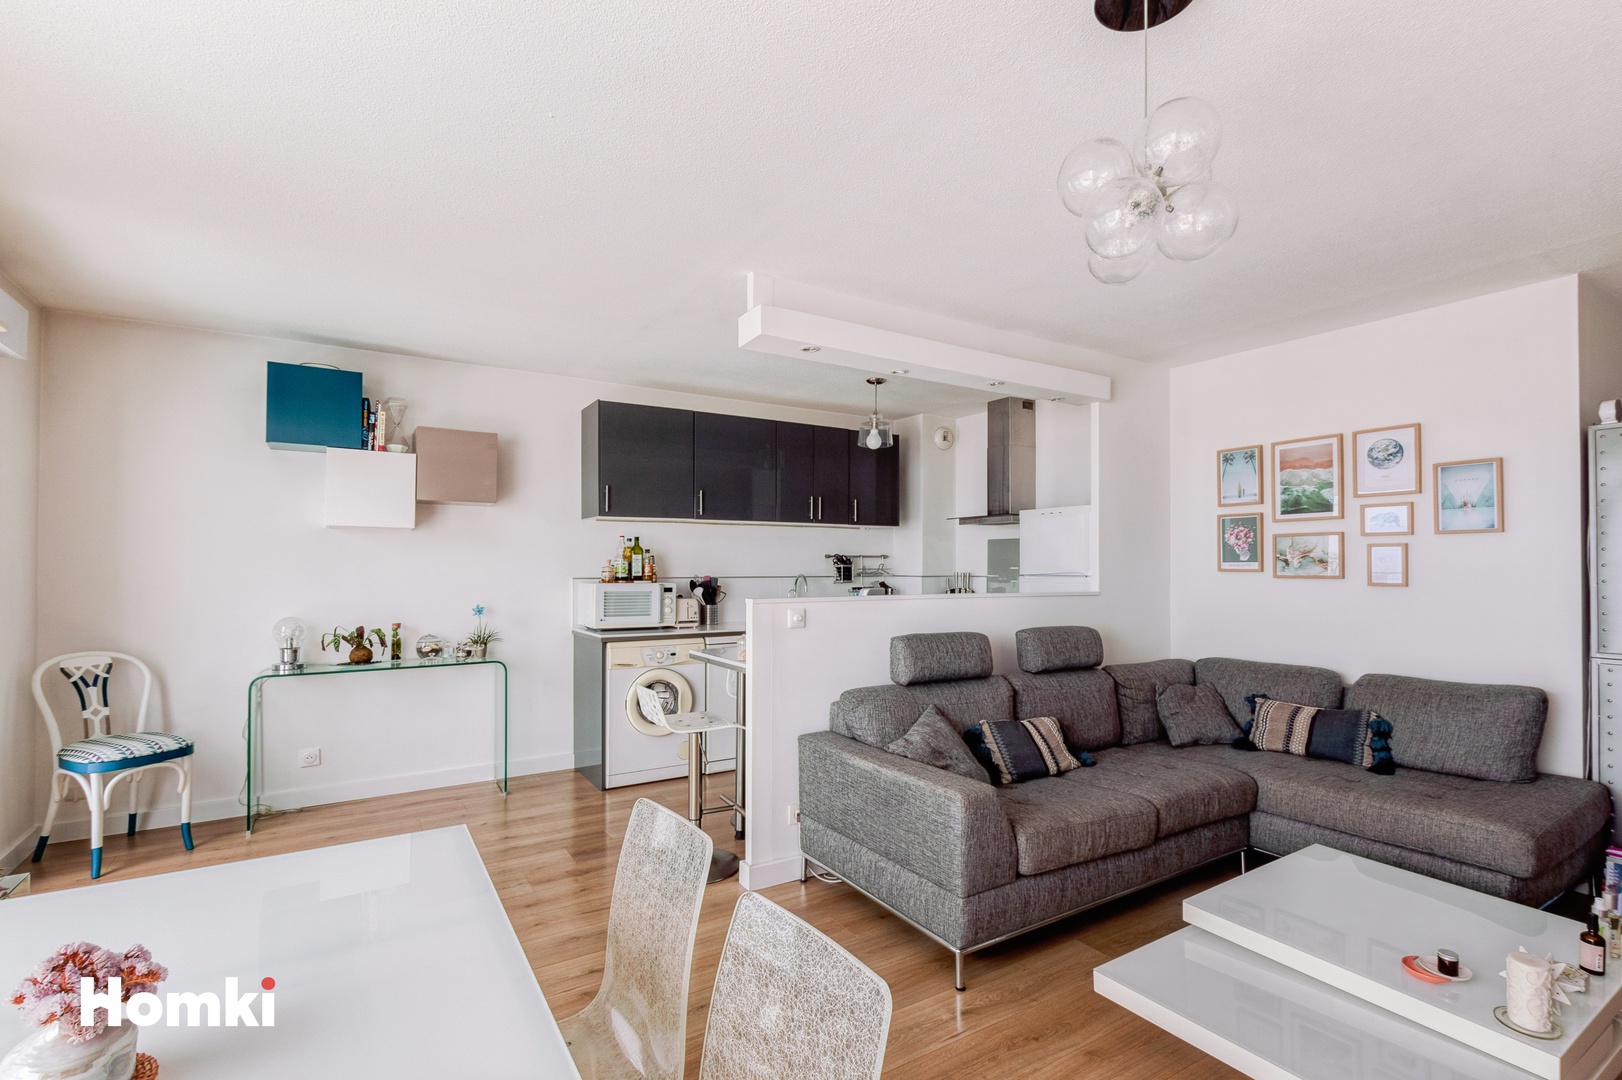 Homki - Vente Appartement  de 61.0 m² à La Ciotat 13600